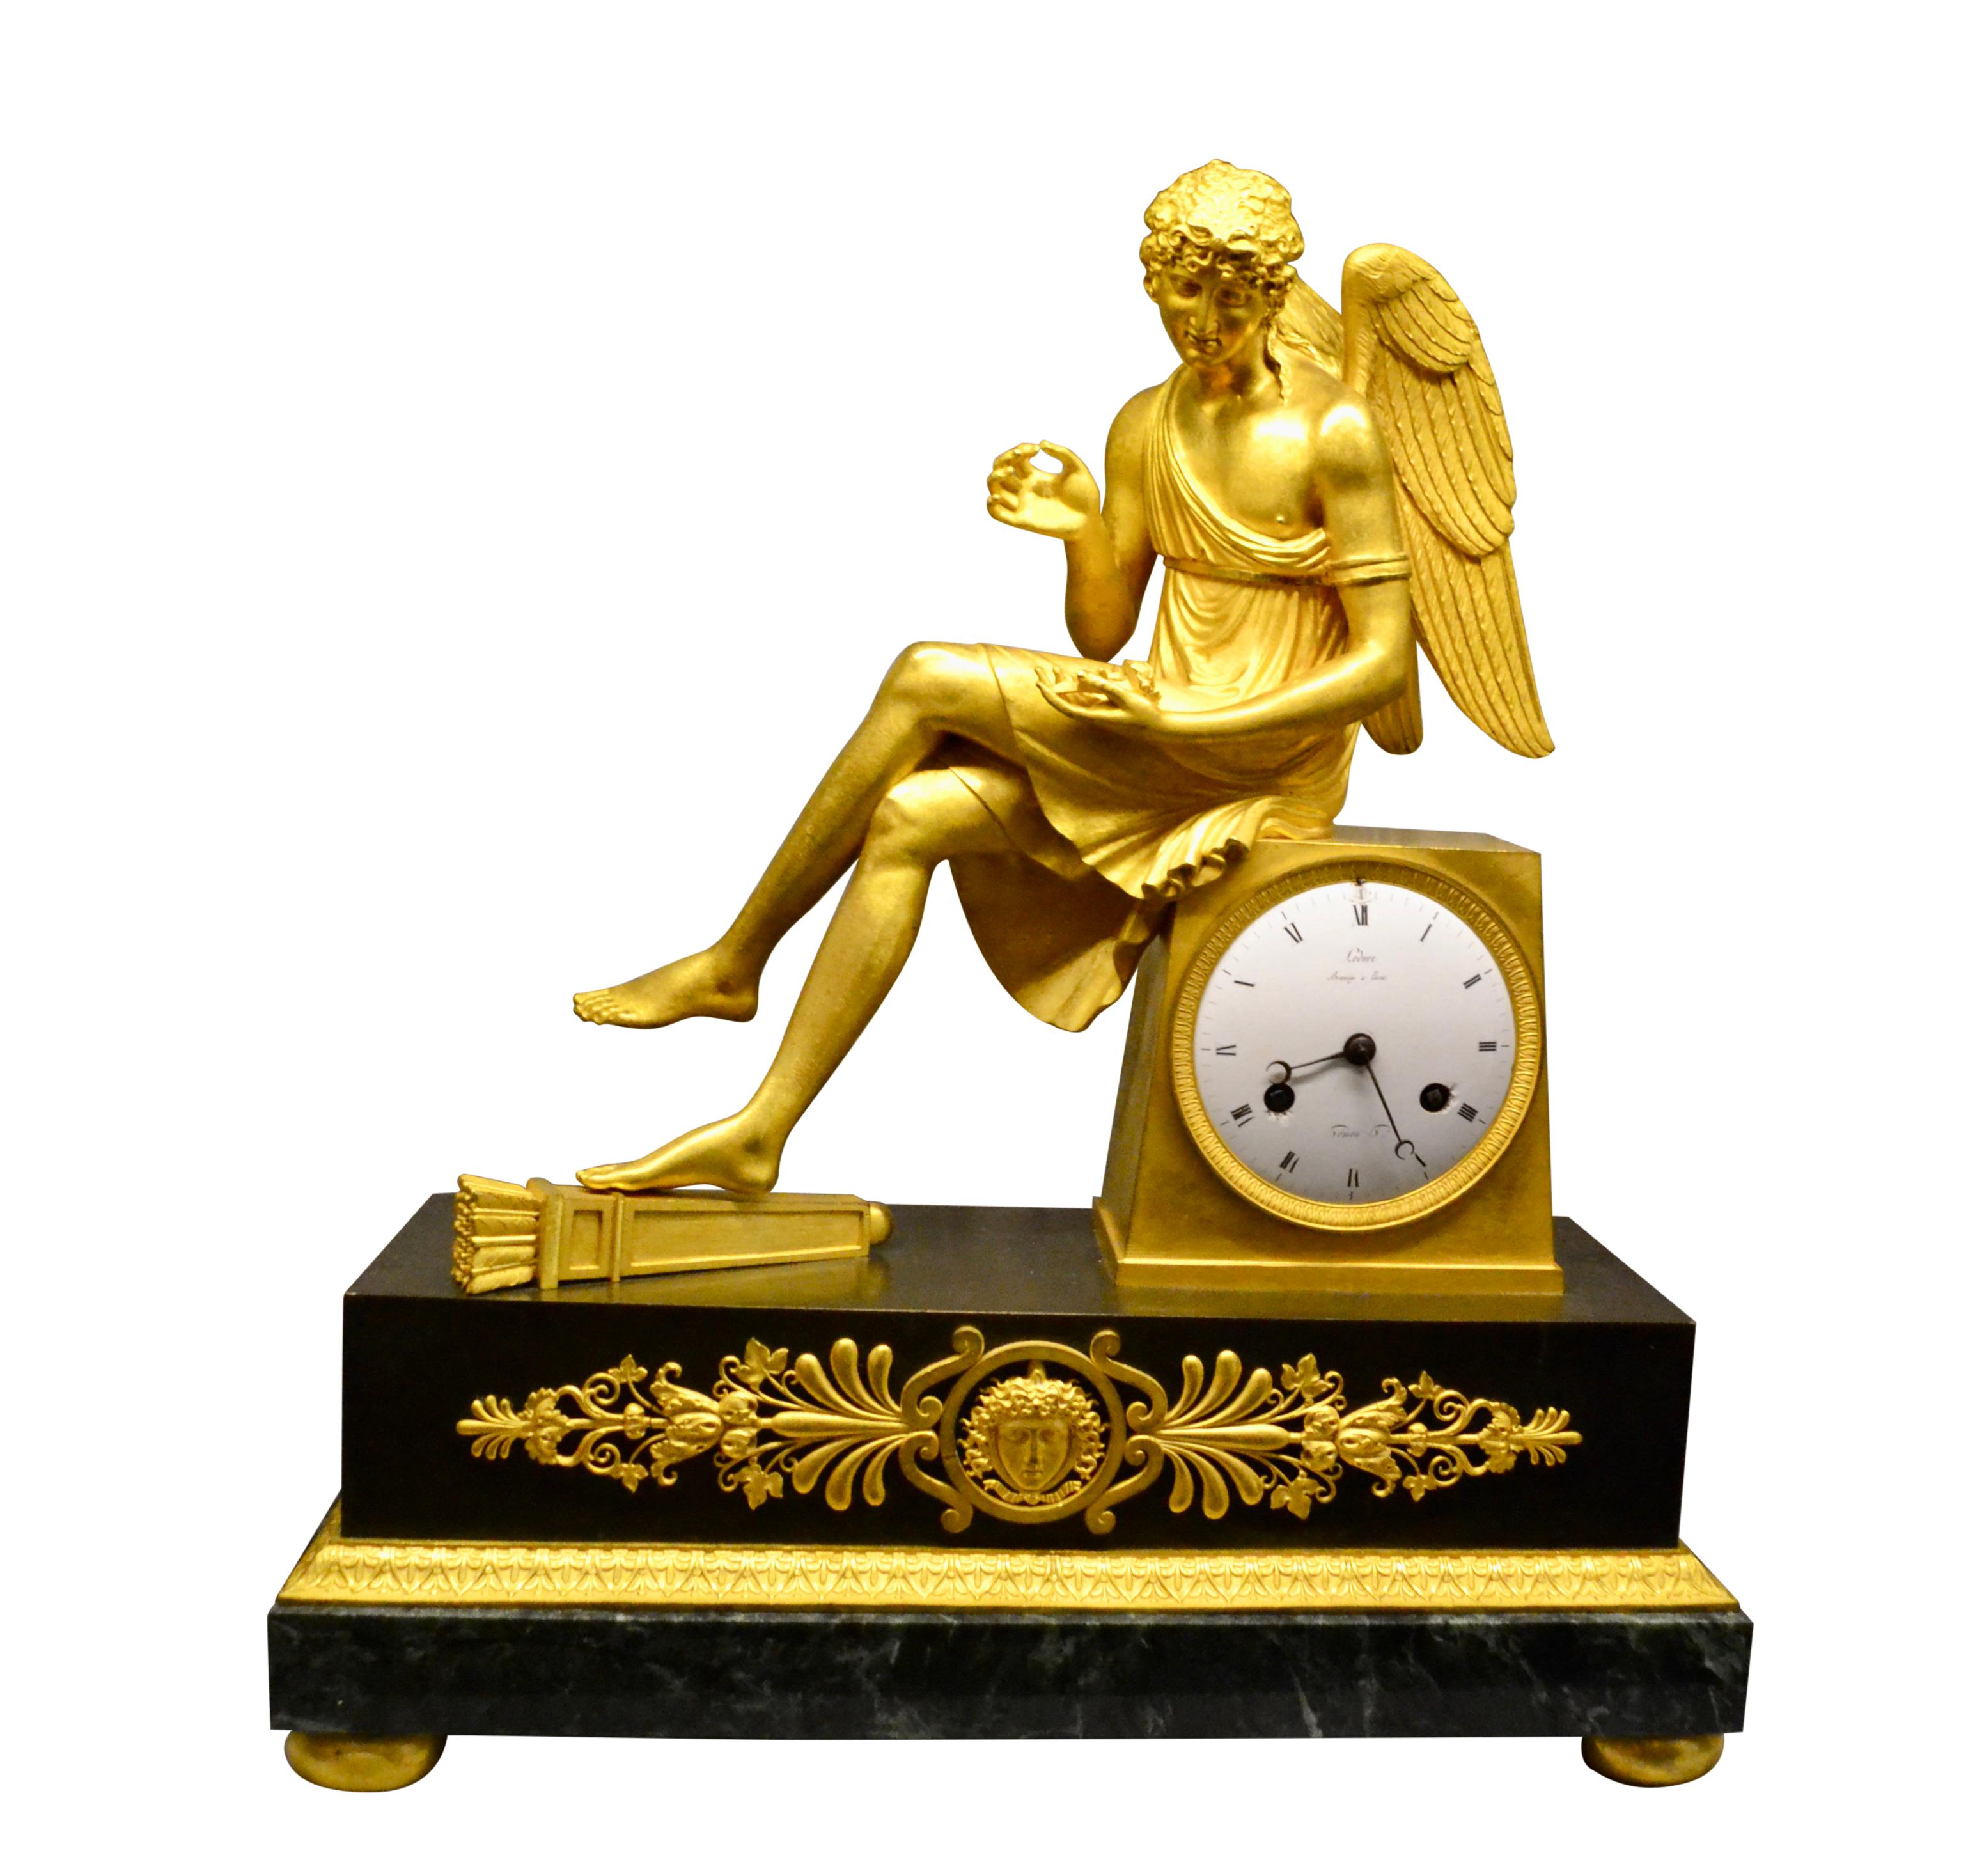 Pendule Empire française de la plus haute qualité, représentant un cupidon ailé assis tenant une rose ; le boîtier est en bronze doré et patiné. L'horloge montre un cupidon doré assis sur le socle de l'horloge, un pied reposant sur un carquois et sa